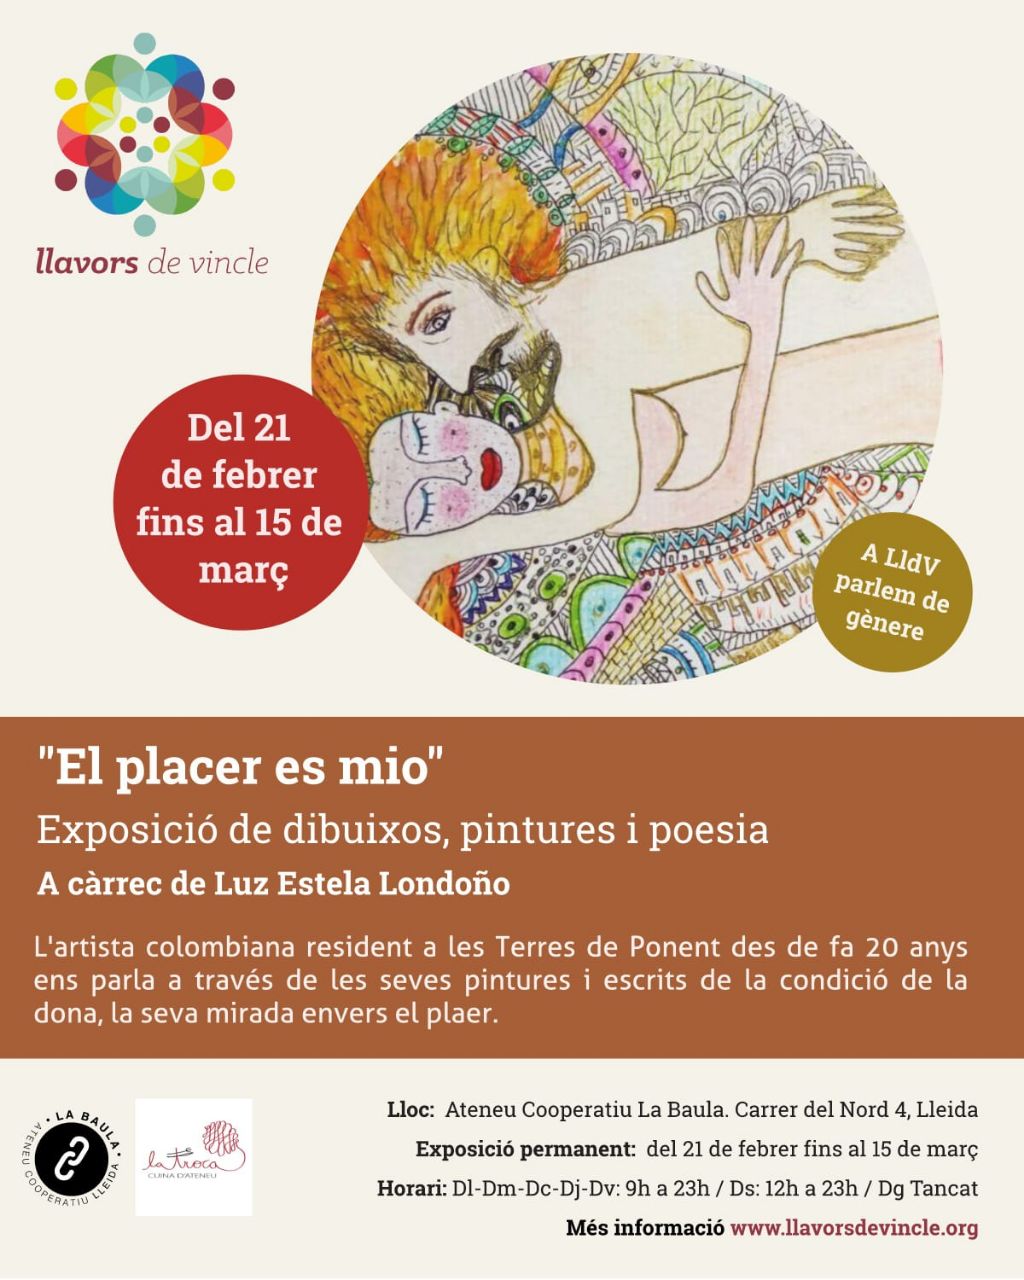 "El placer es mio": Exposició de dibuixos, pintures i poesia